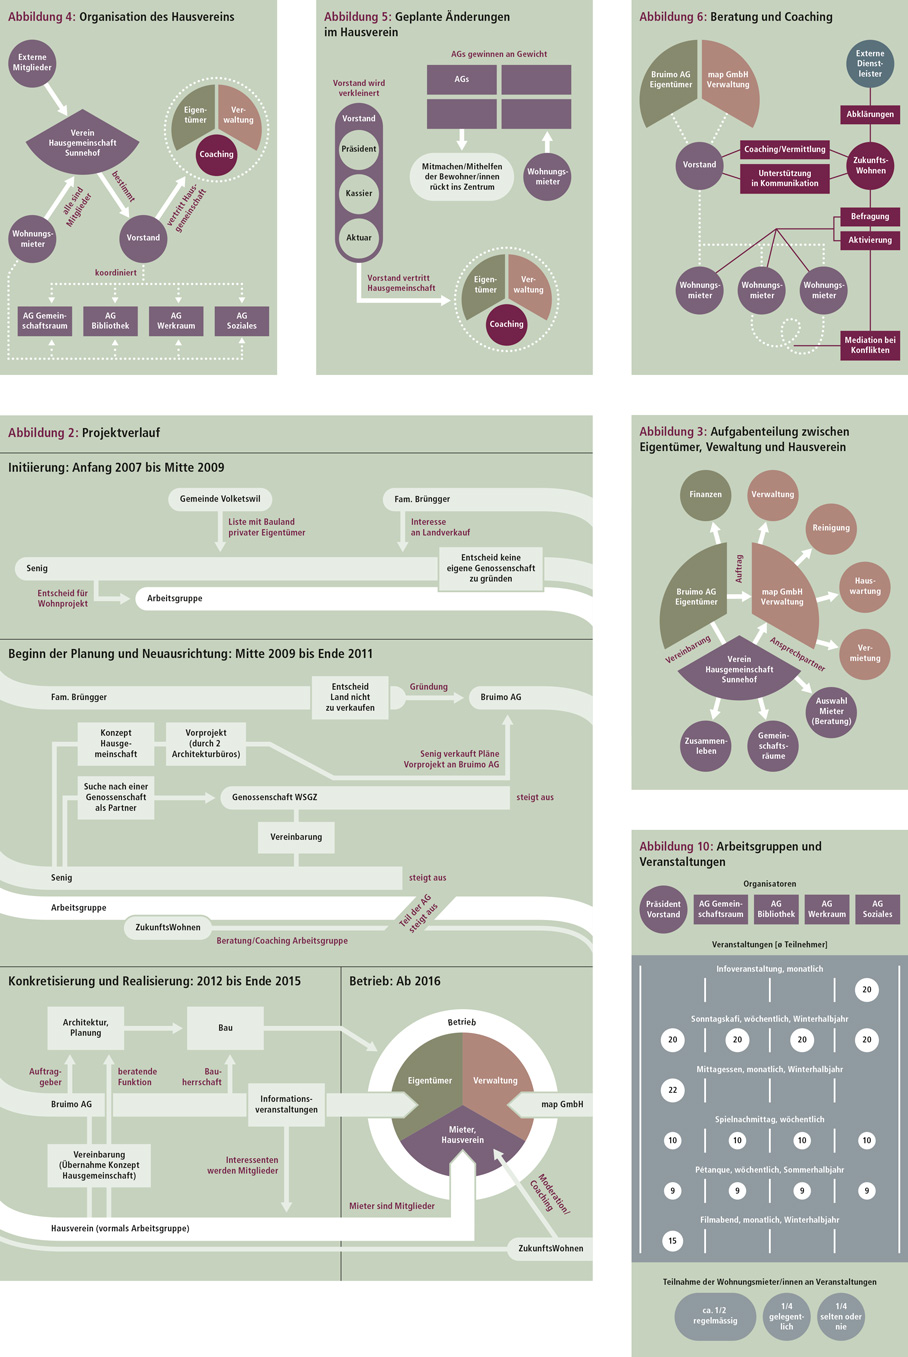 Infographic/Data Design: Die Grafiken visualisieren die komplexe Entstehungsgeschichte des Wohnprojekts und Aspekte des Betriebs.